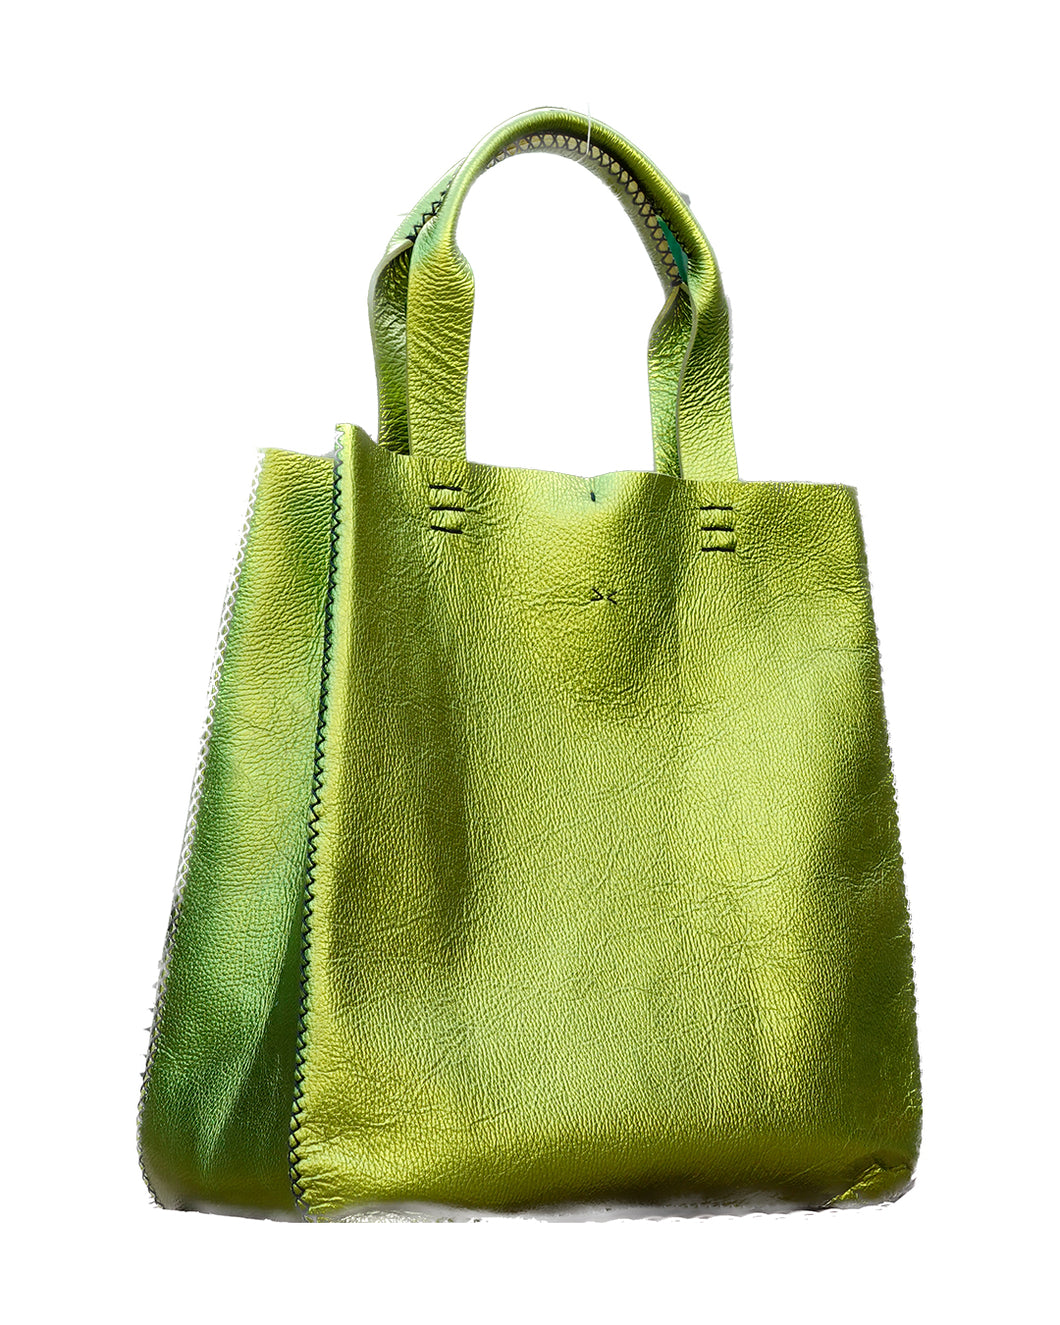 ipanema bag | metallic green leather